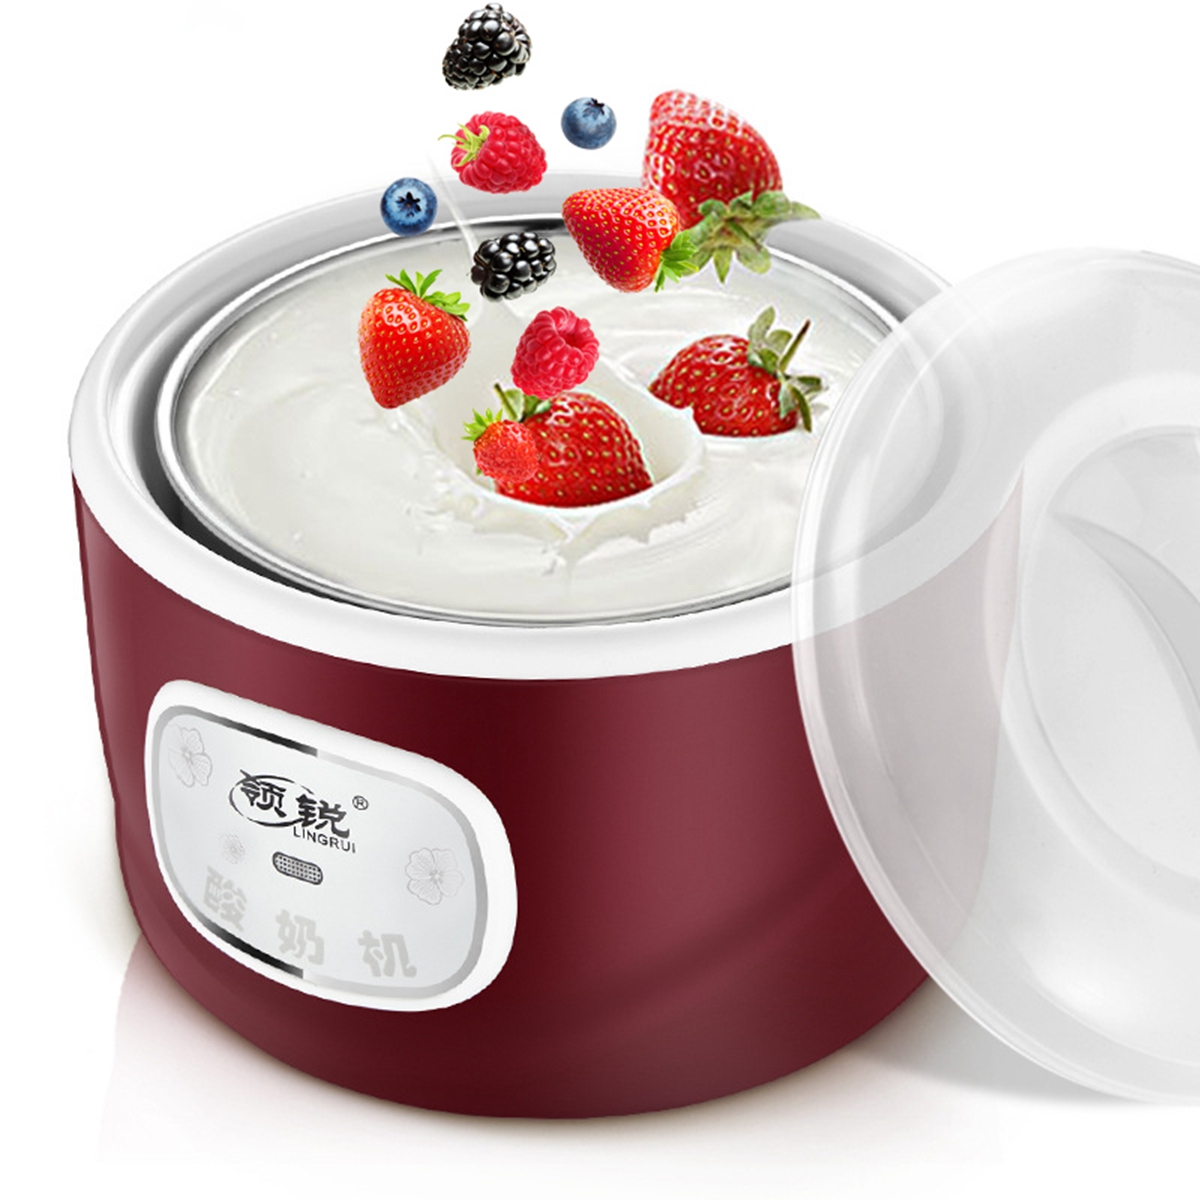 

4 стеклянных банки Автоматическая машина для йогурта Машина для рисования риса Йогурт-чайник Кухня электрическая Набор Плит